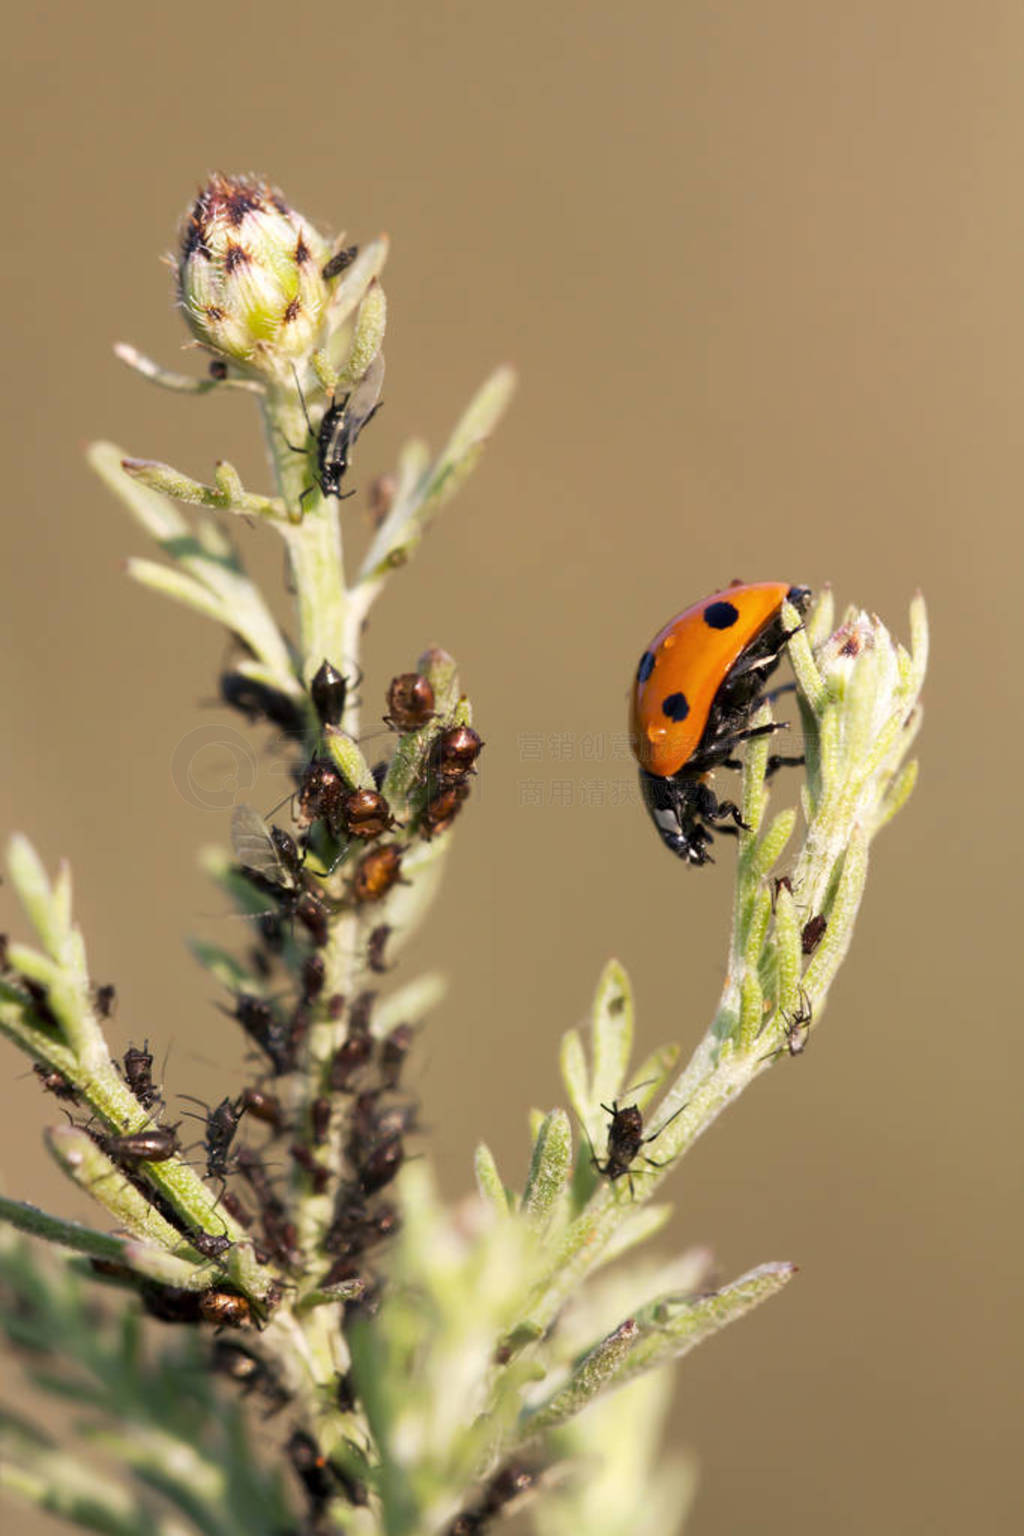 Aphids and a useful ladybug